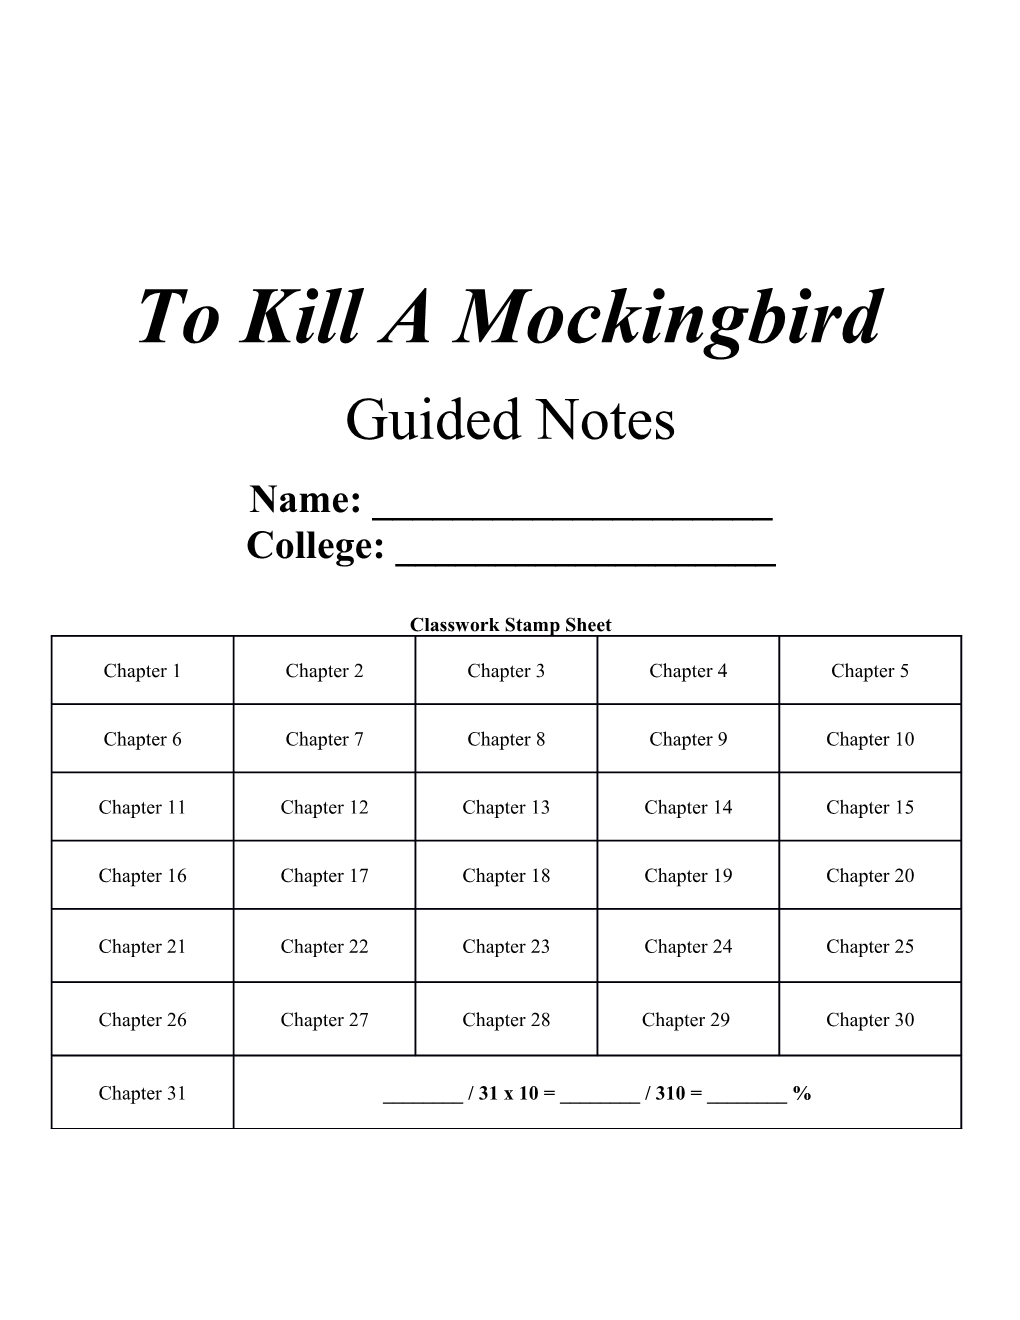 To Kill a Mockingbird s25